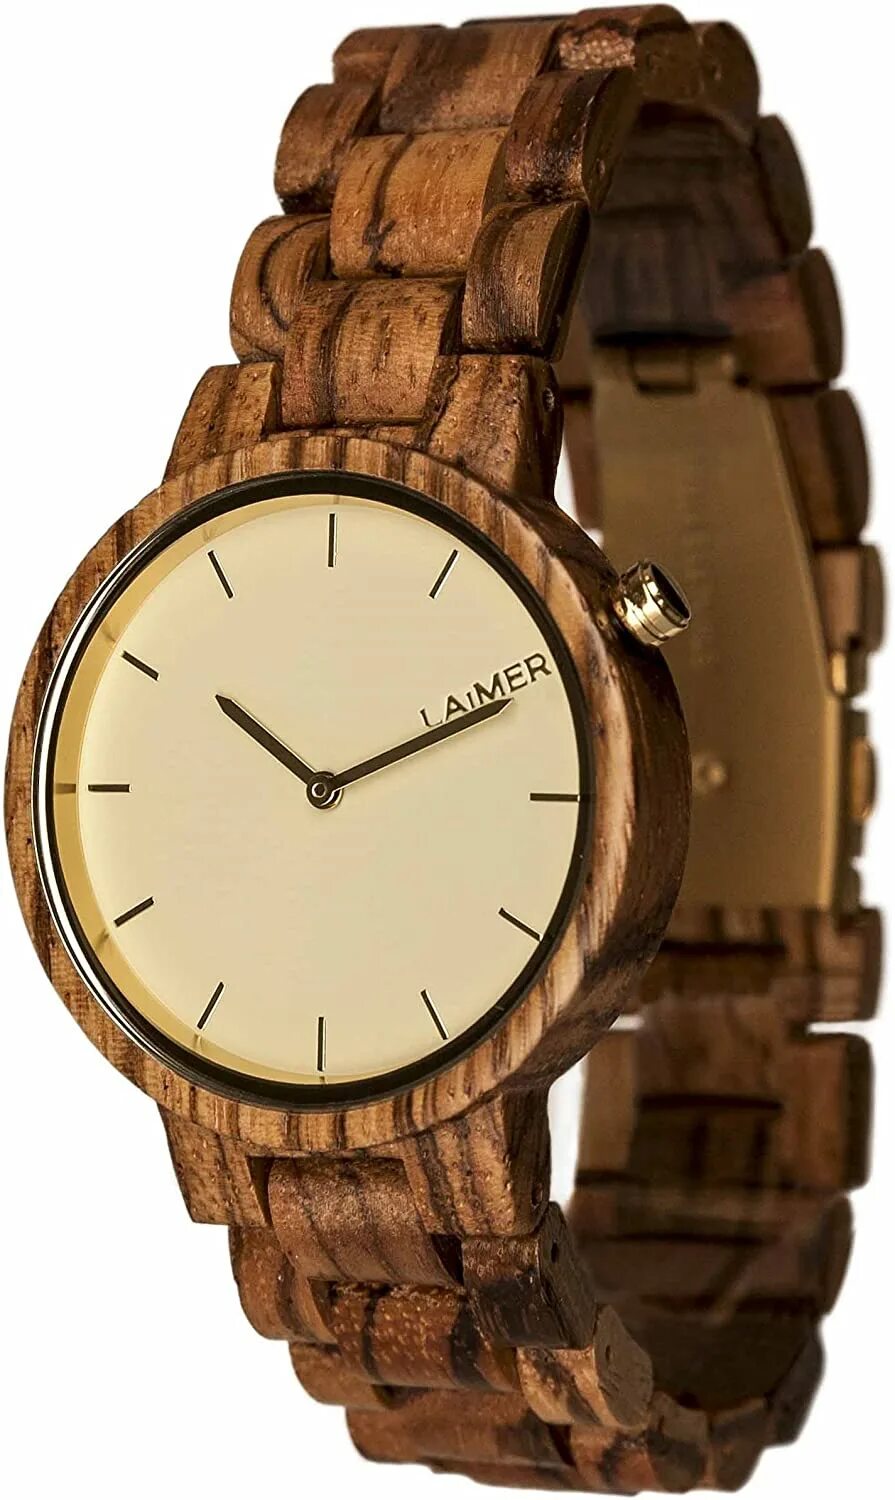 Watch natural. Деревянные часы наручные. Деревянные наручные часы женские. Часы из дерева наручные женские. Часы деревянные наручные женские маленькие.